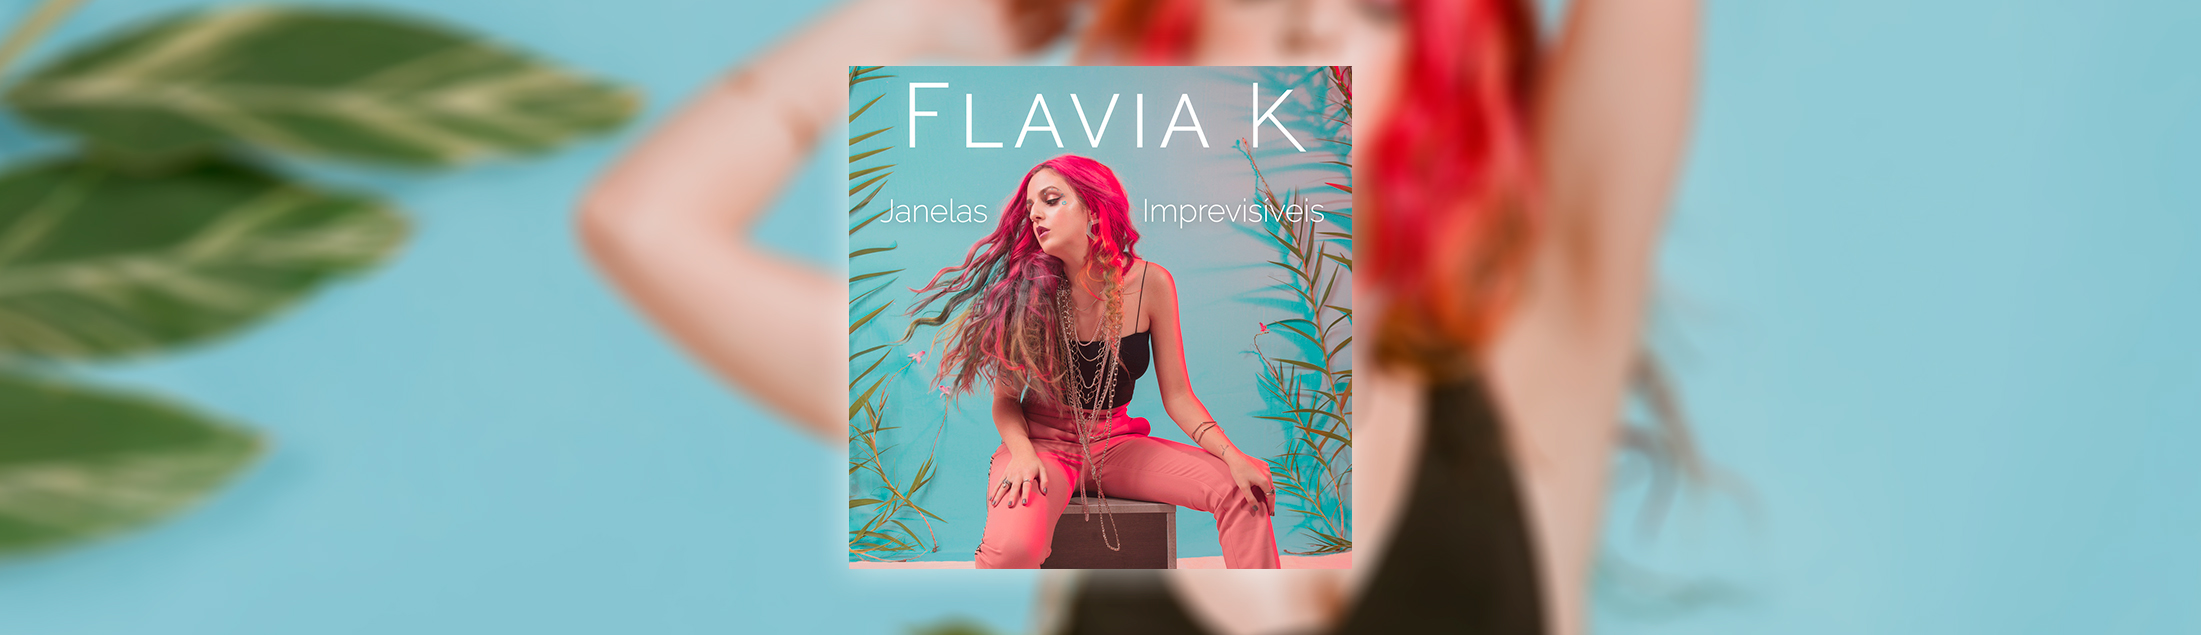 Flavia K traz novas cores ao jazz com Janelas Imprevisíveis